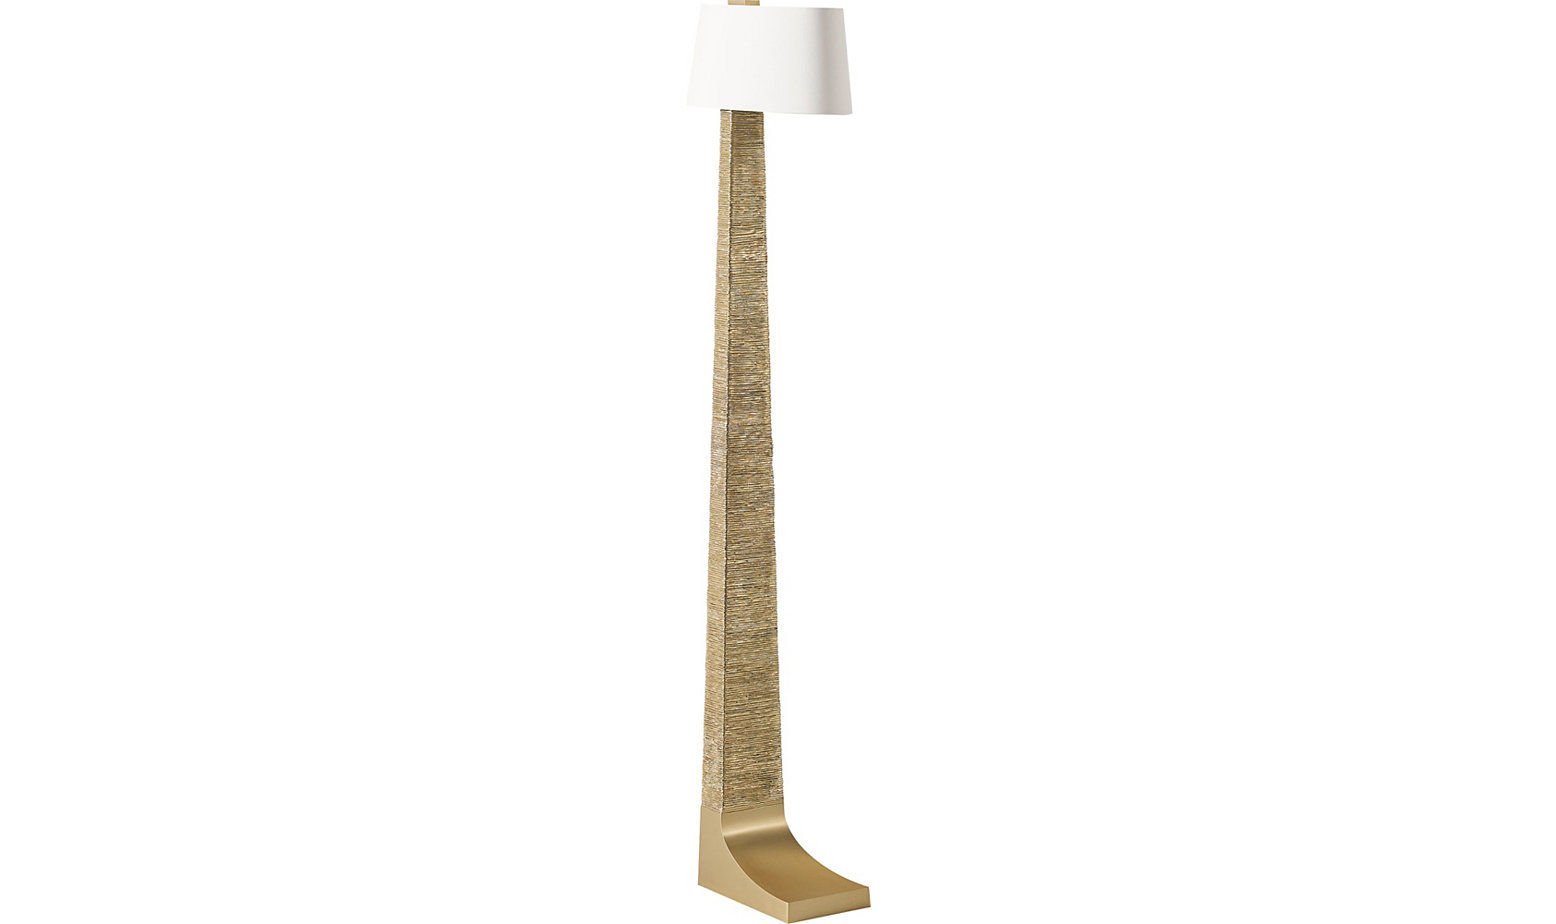 OBELISK FLOOR LAMP